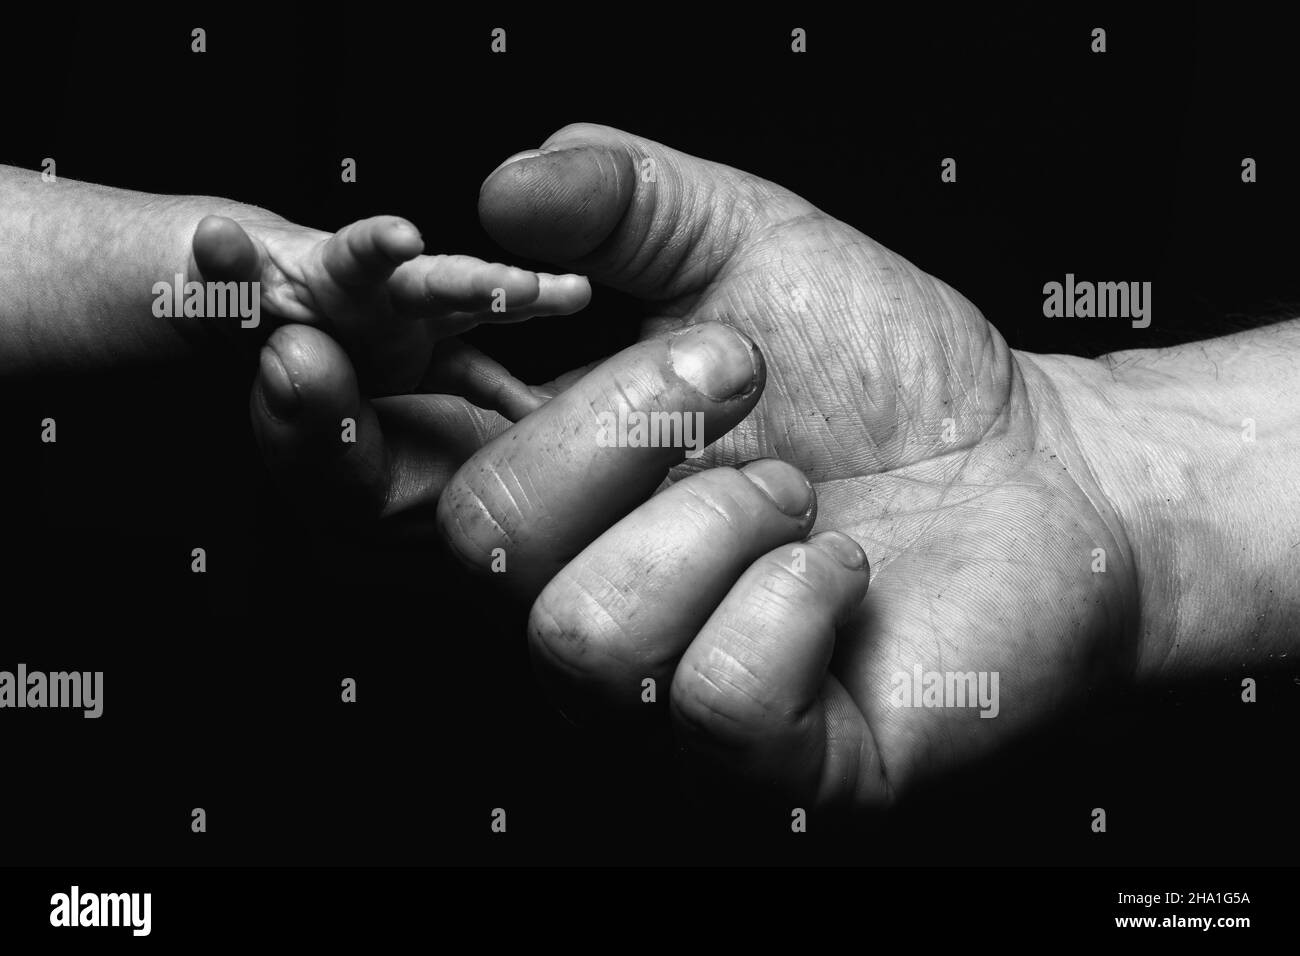 Primo piano in scala di grigi di un uomo cresciuto pugno-bumping mano con una mano di un bambino Foto Stock